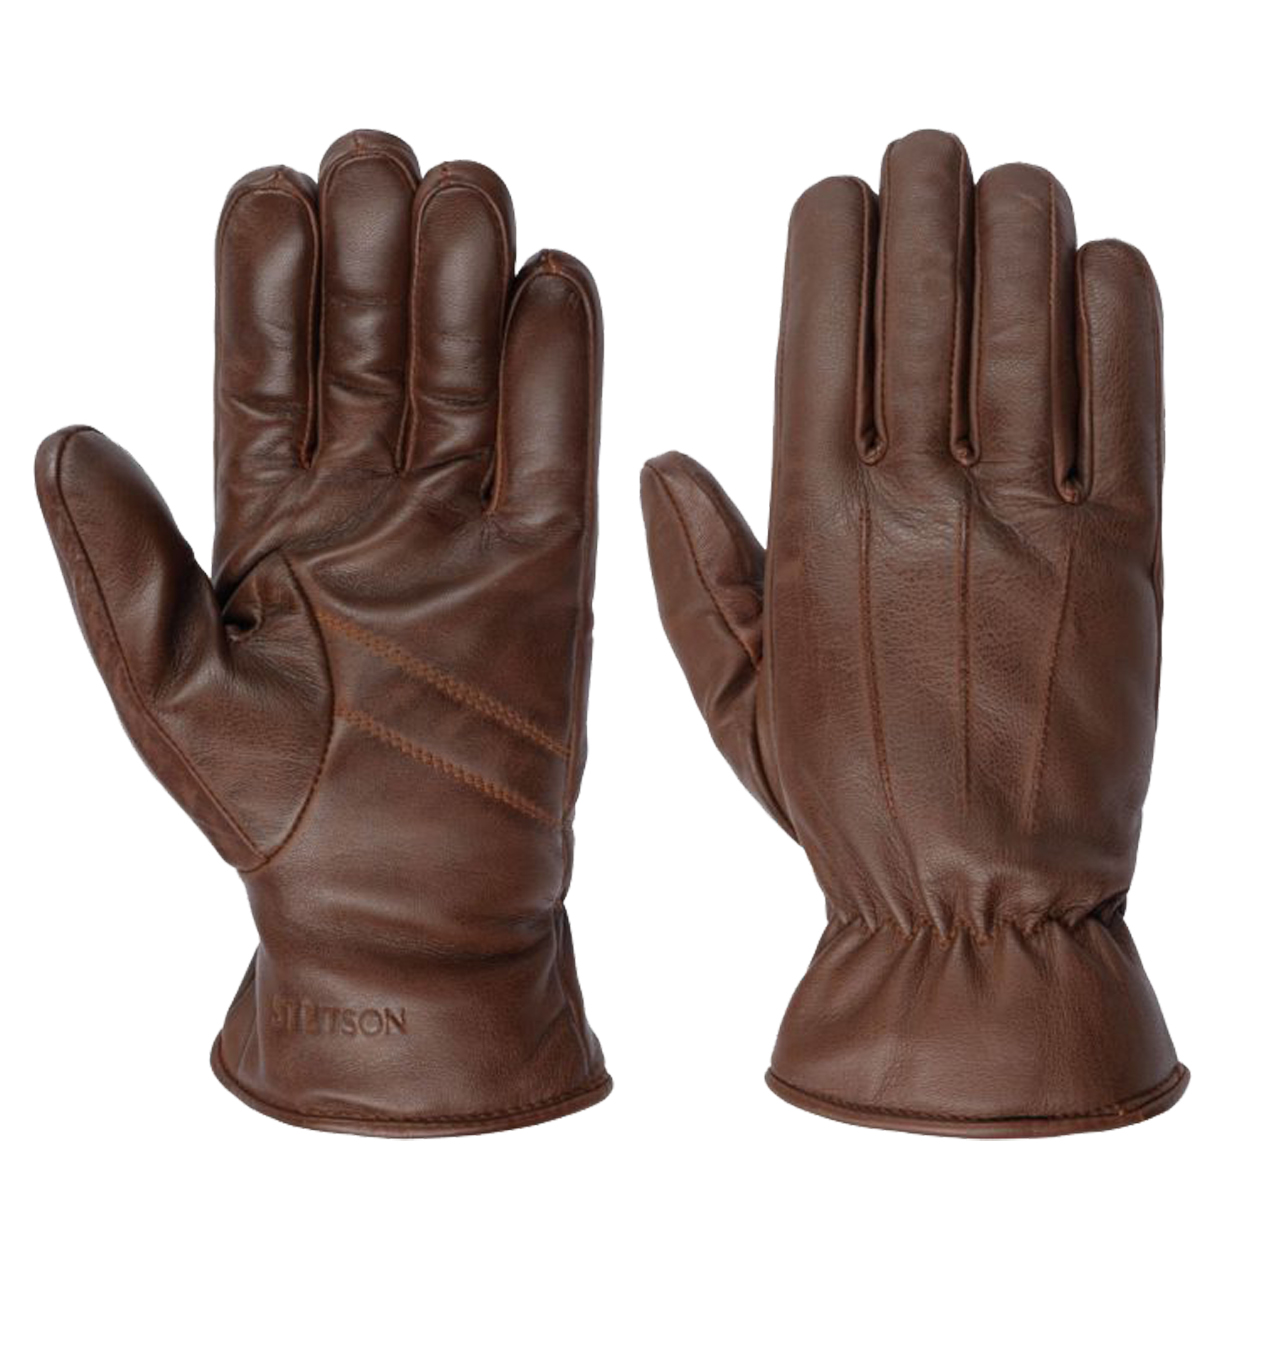 Stetson - Sheepskin Gloves - Brown